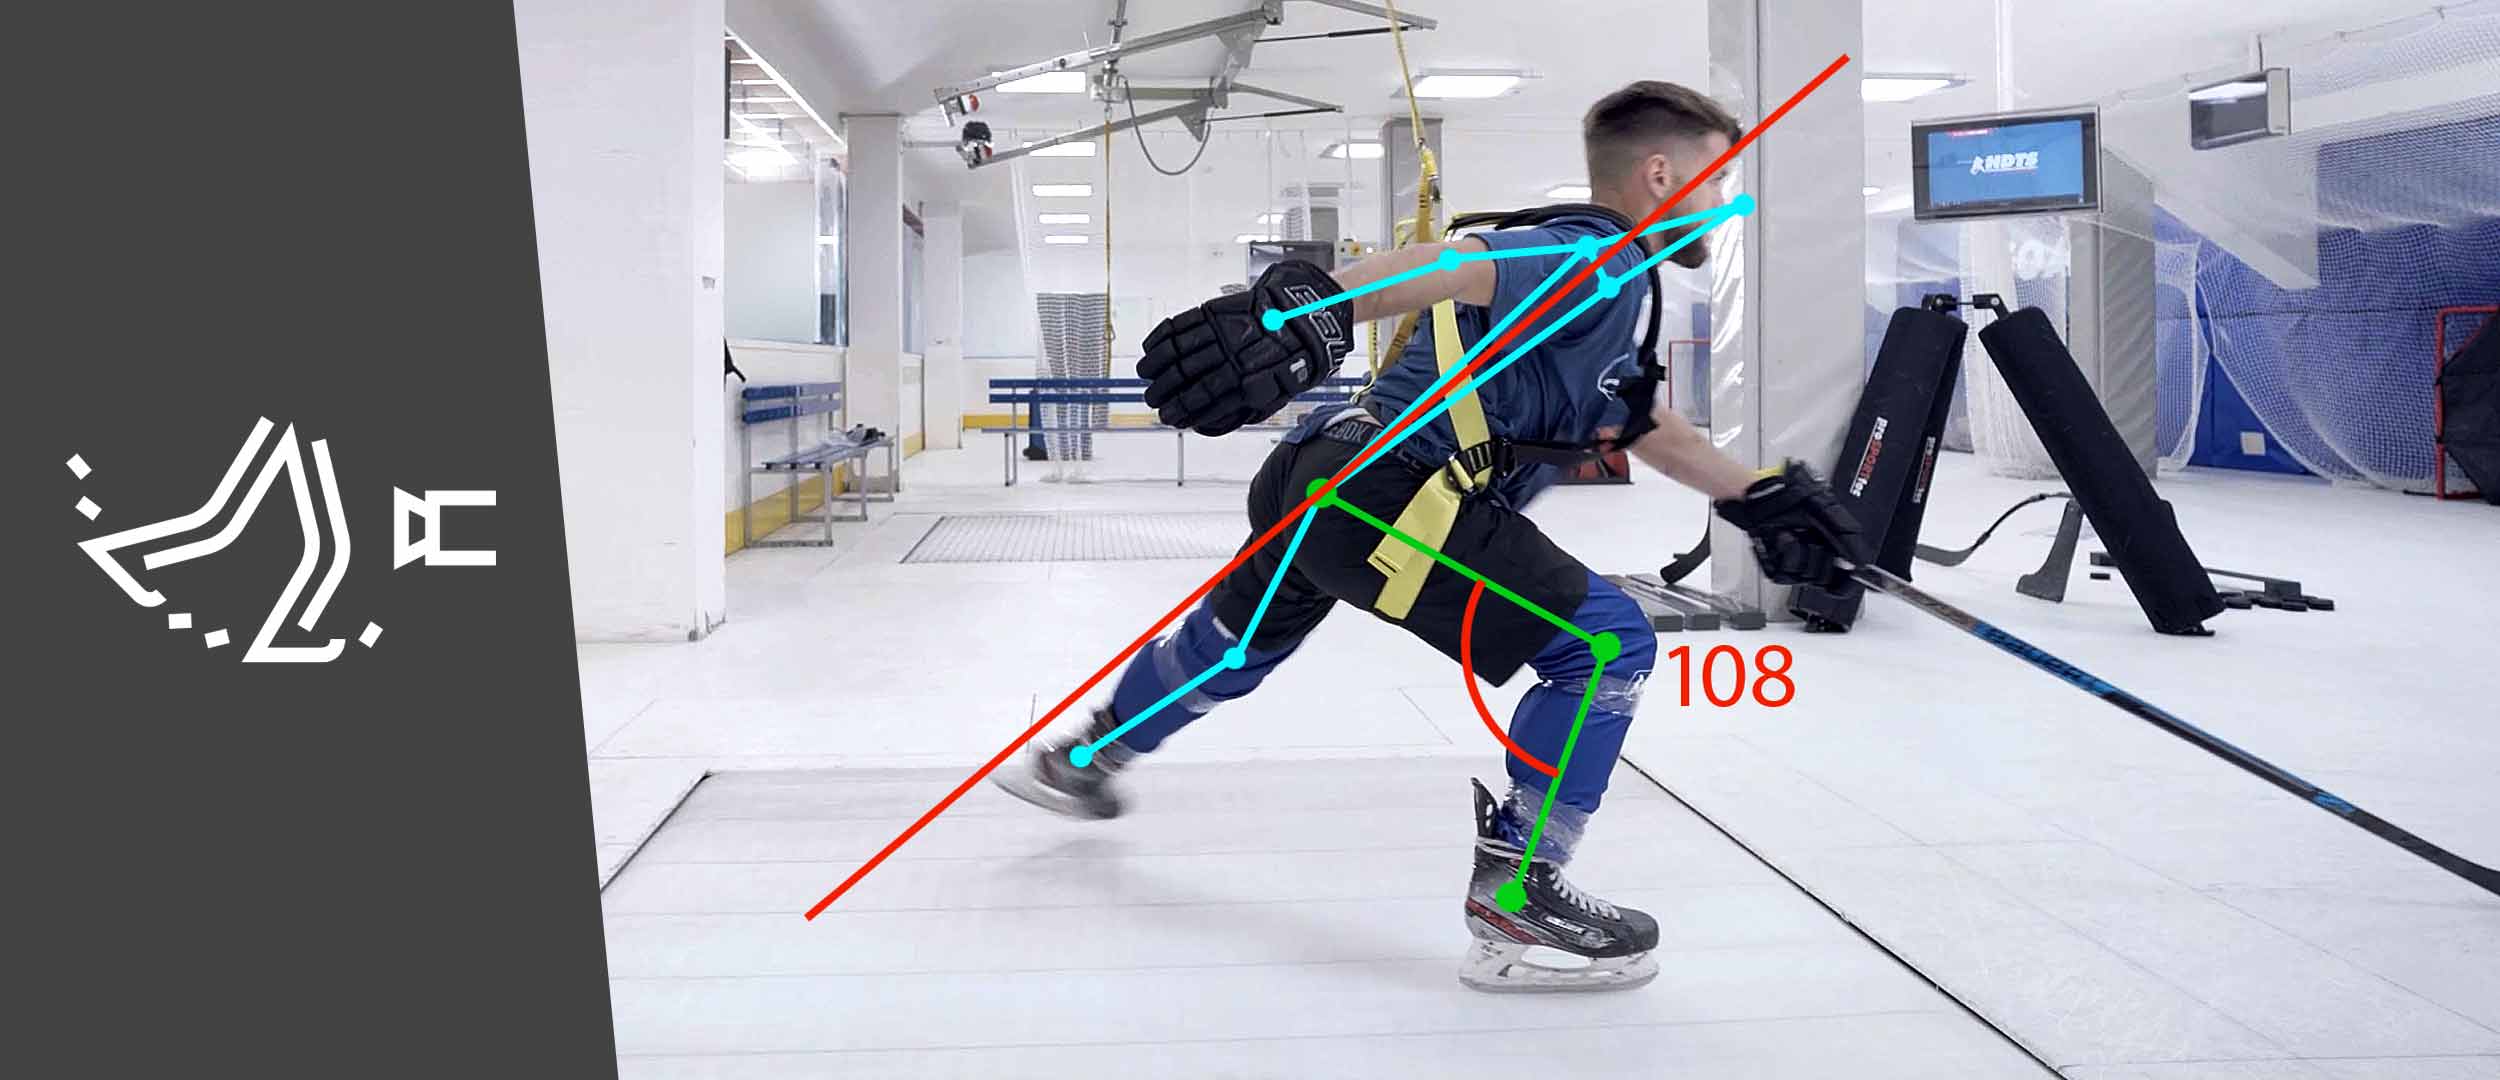 Система анализа техники катания на коньках с искусственным интеллектом